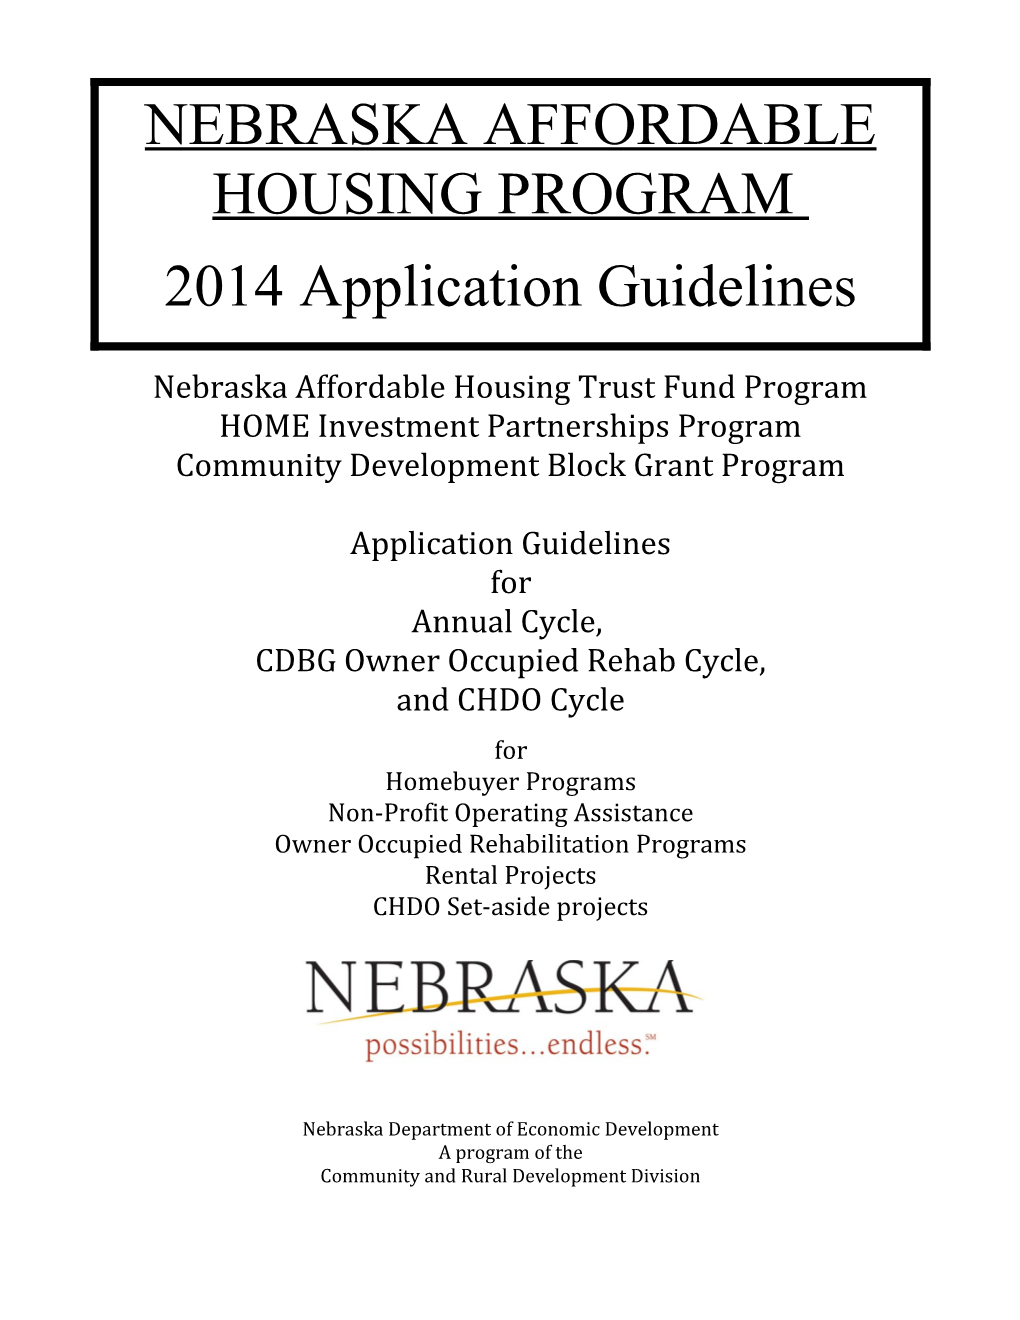 Nebraska Affordable Housing Program